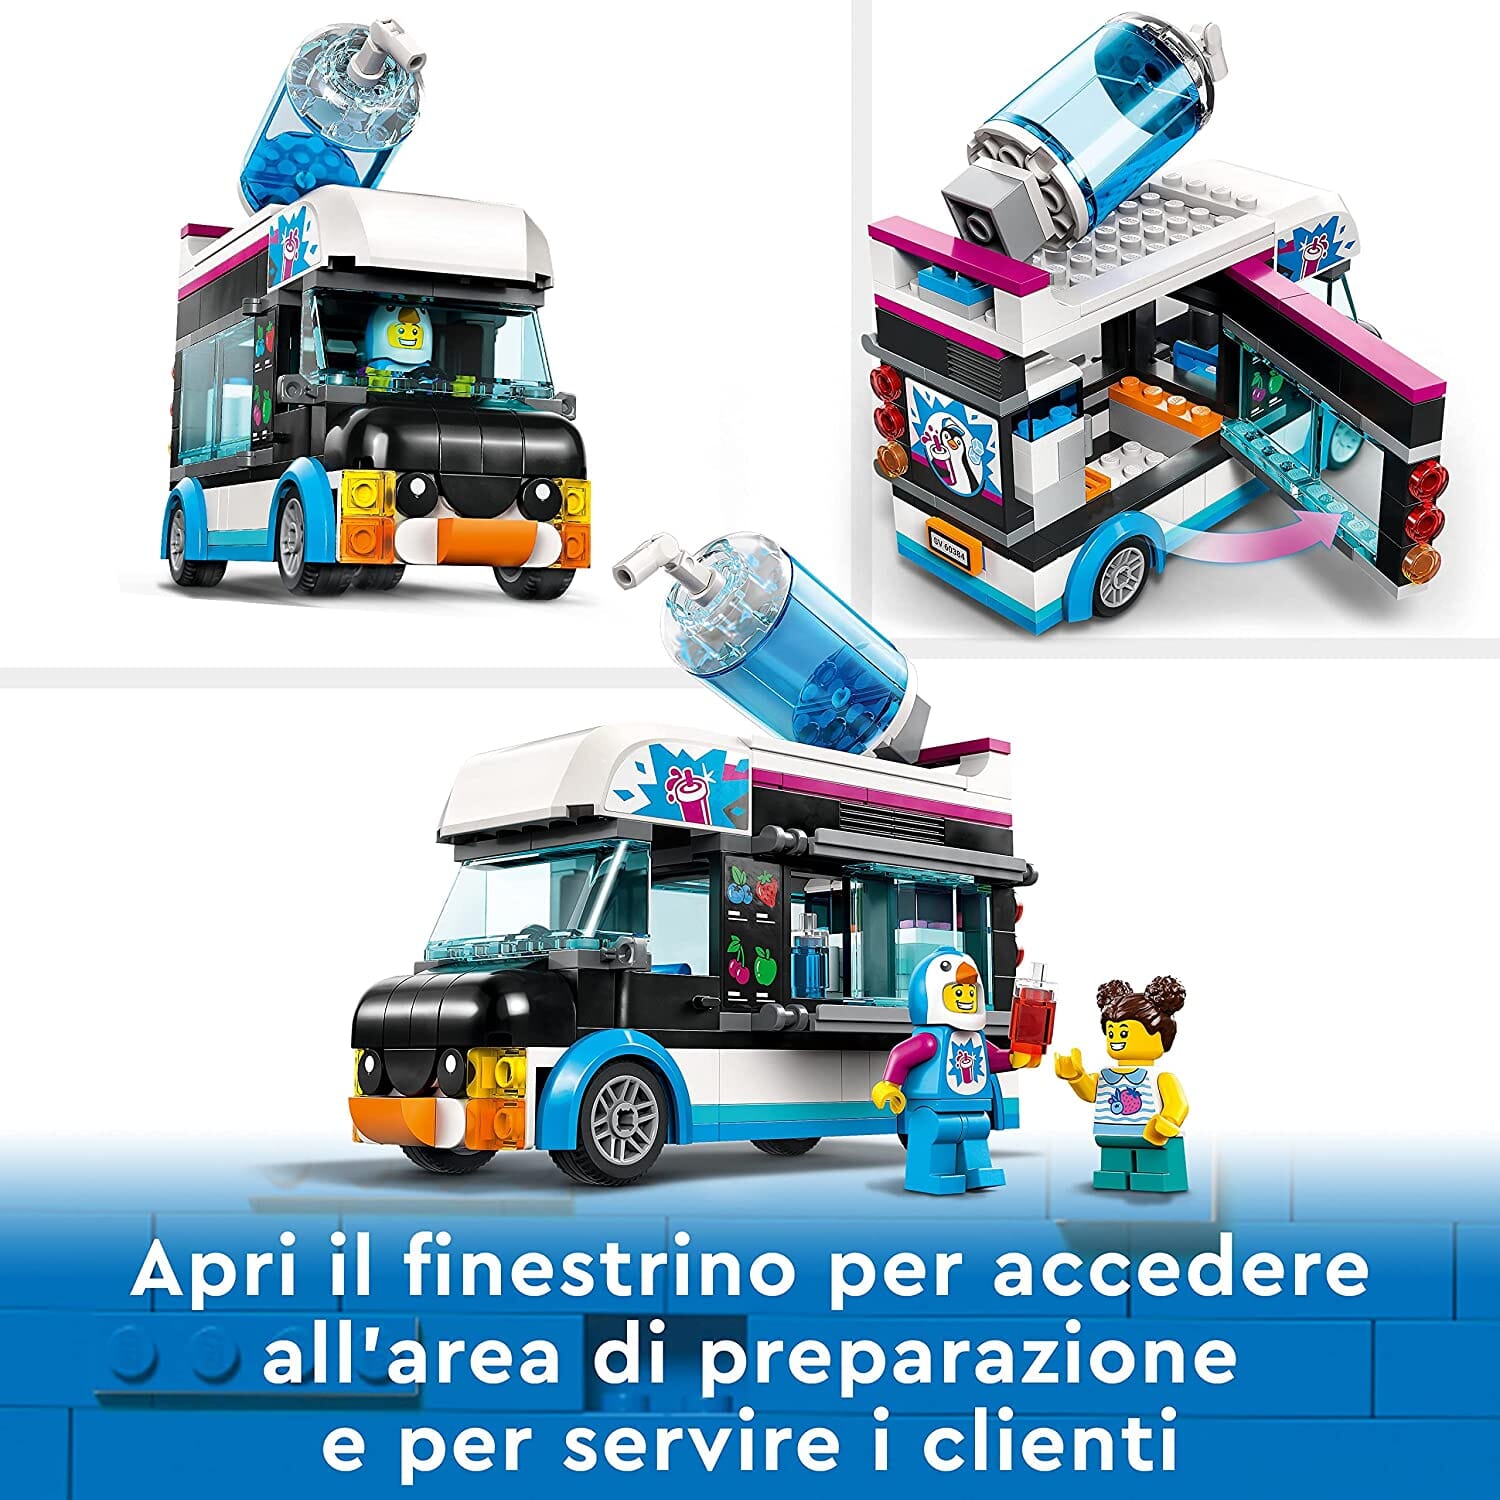 LEGO 60384 City Il Furgoncino delle Granite del Pinguino toysvaldichiana.it 